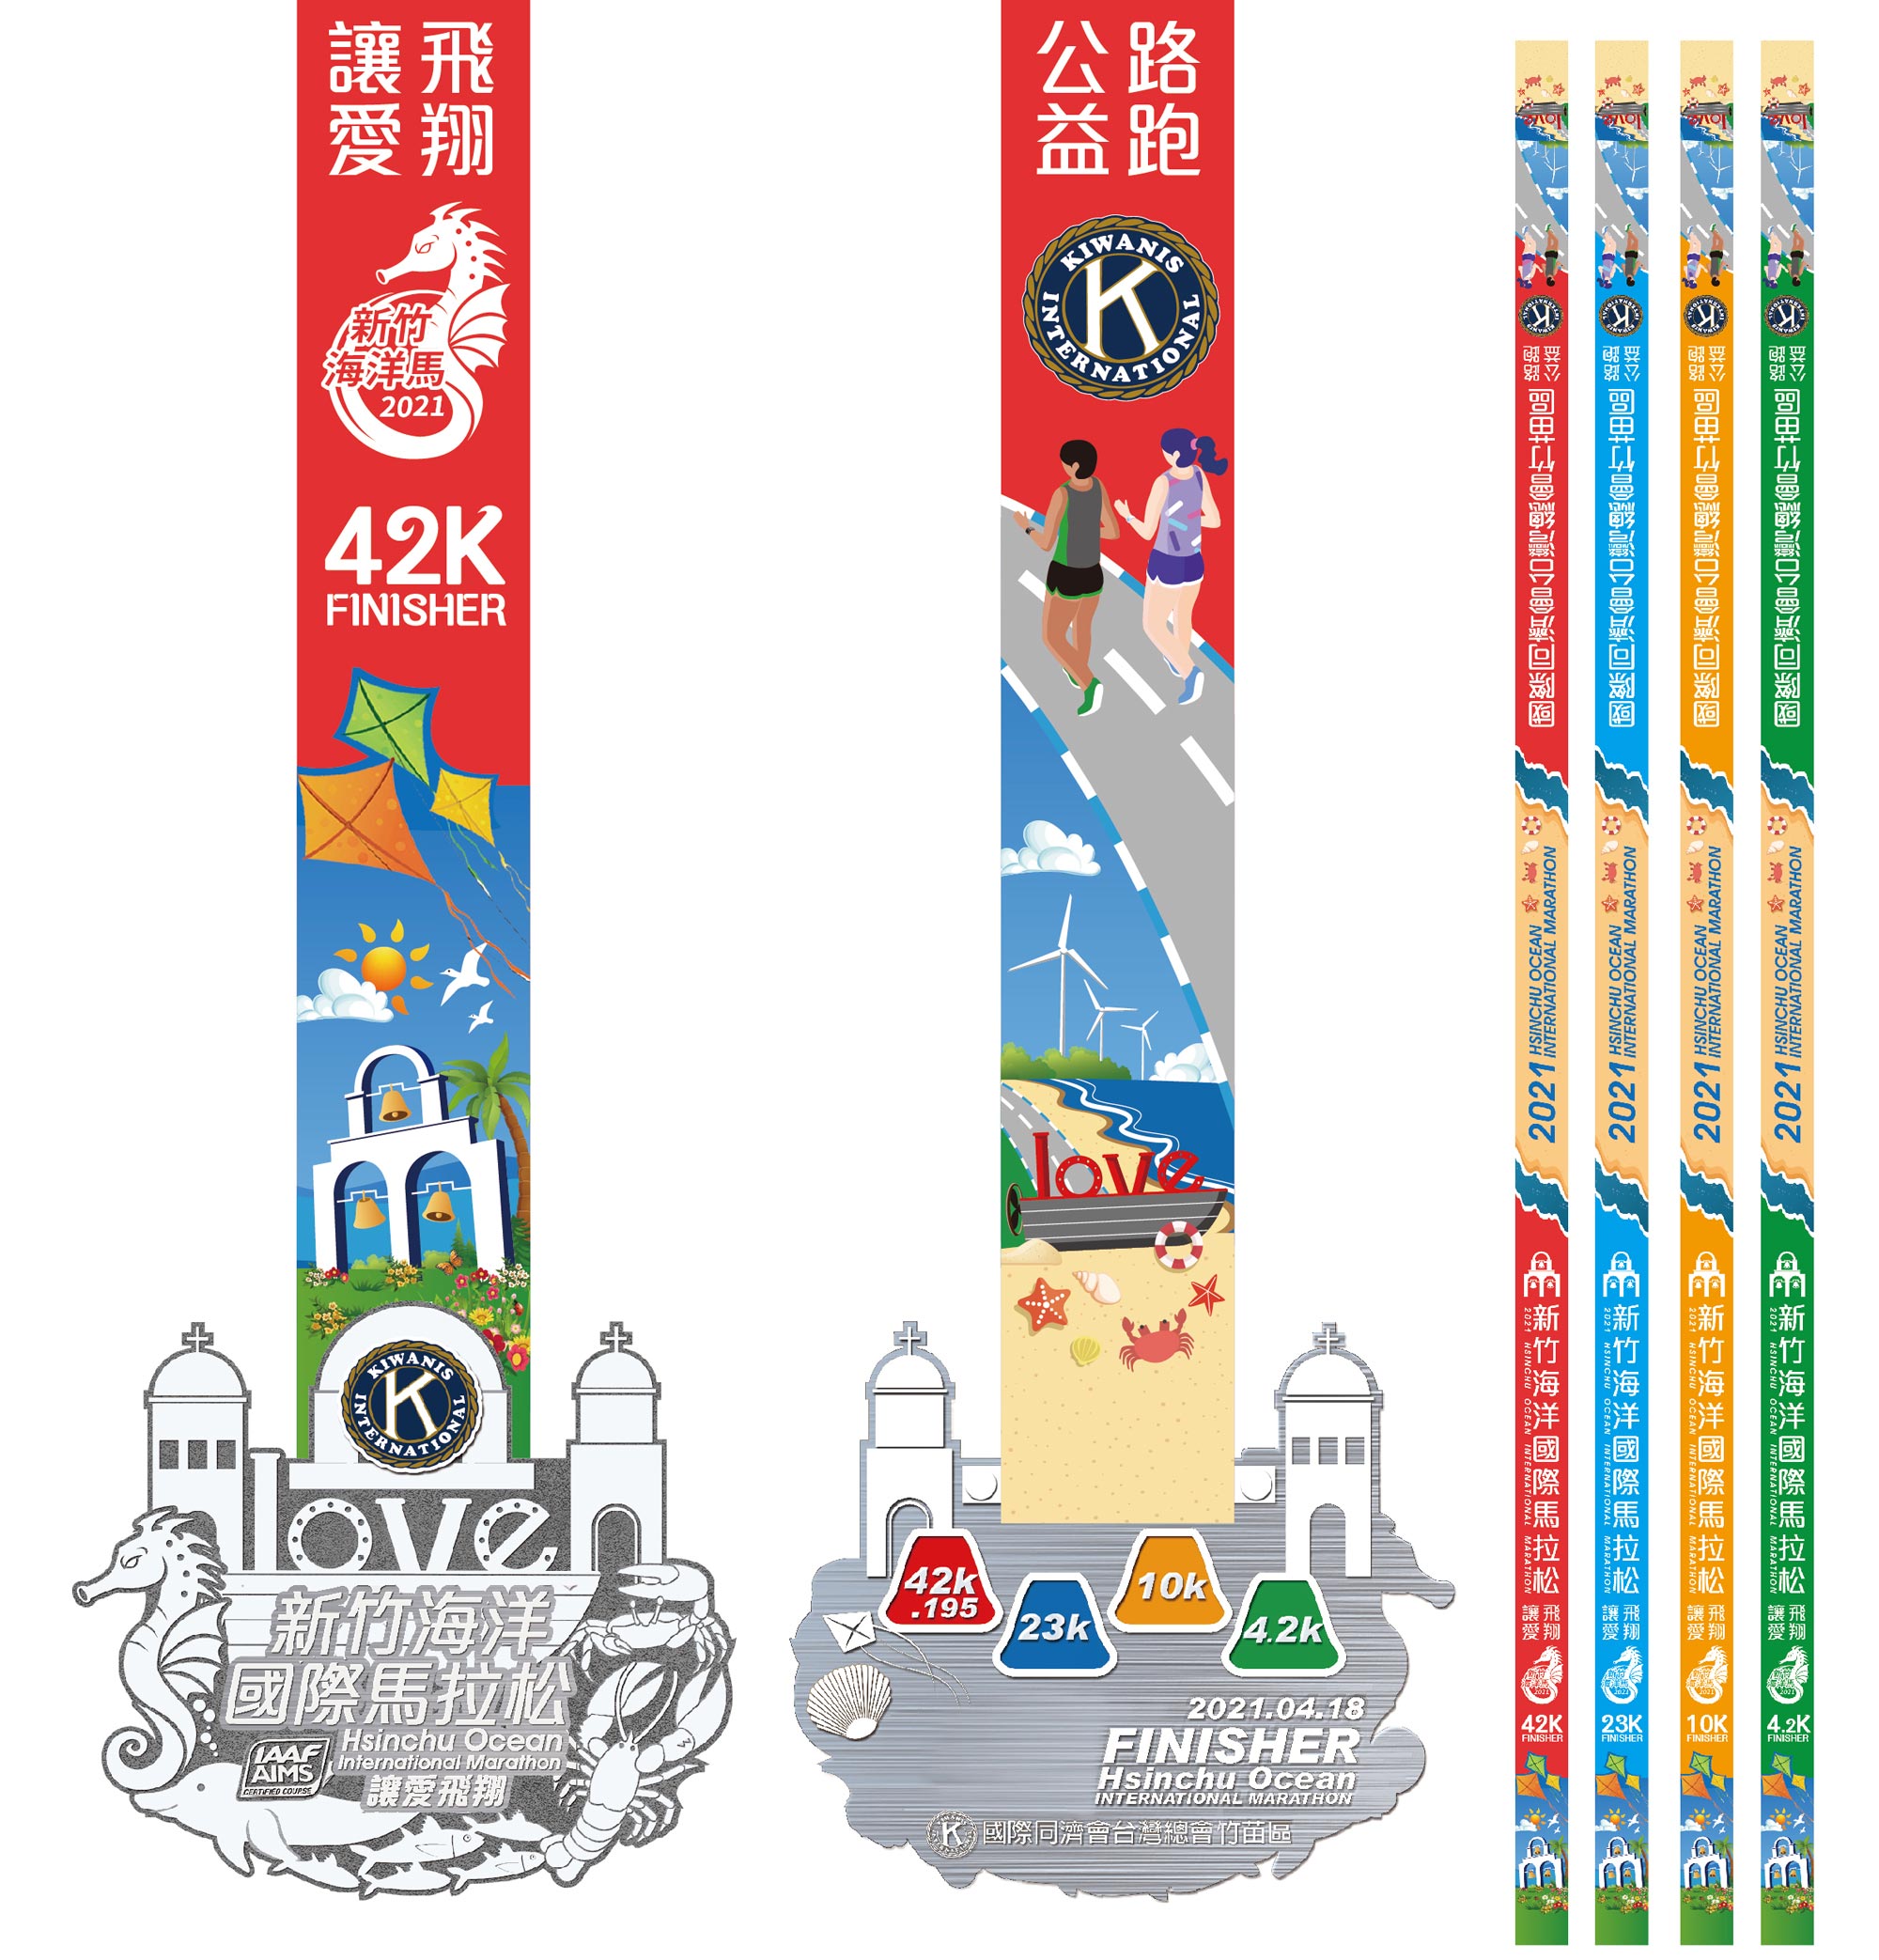 樂活報名網 - 2021 新竹海洋國際馬拉松-讓愛飛翔-完賽獎牌